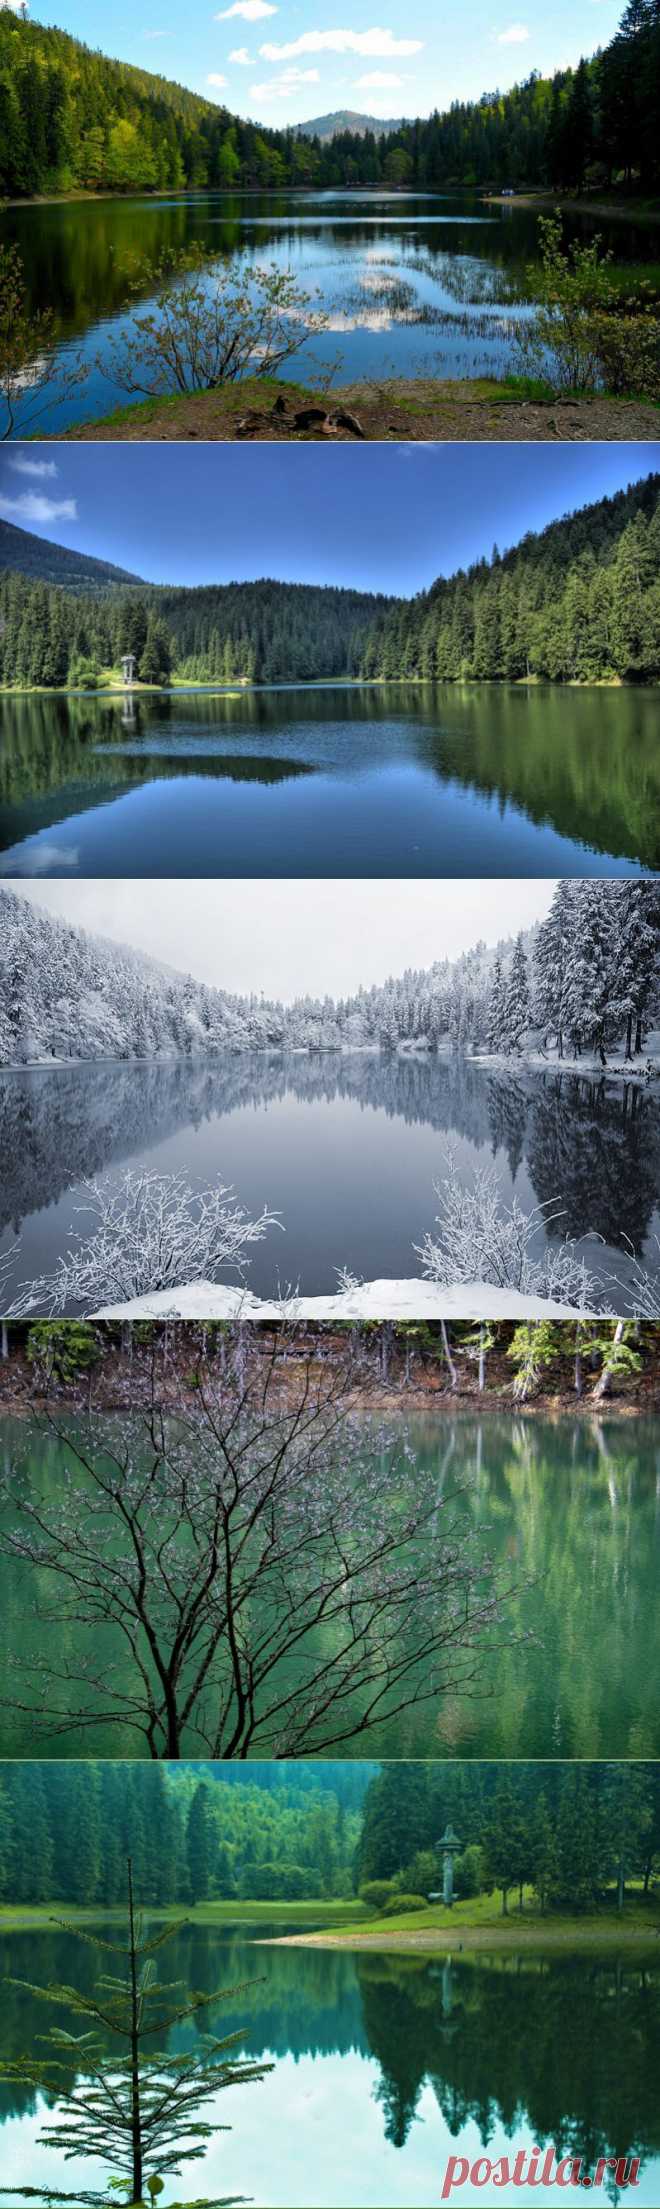 Синевир - самое красивое озеро Украинских Карпат